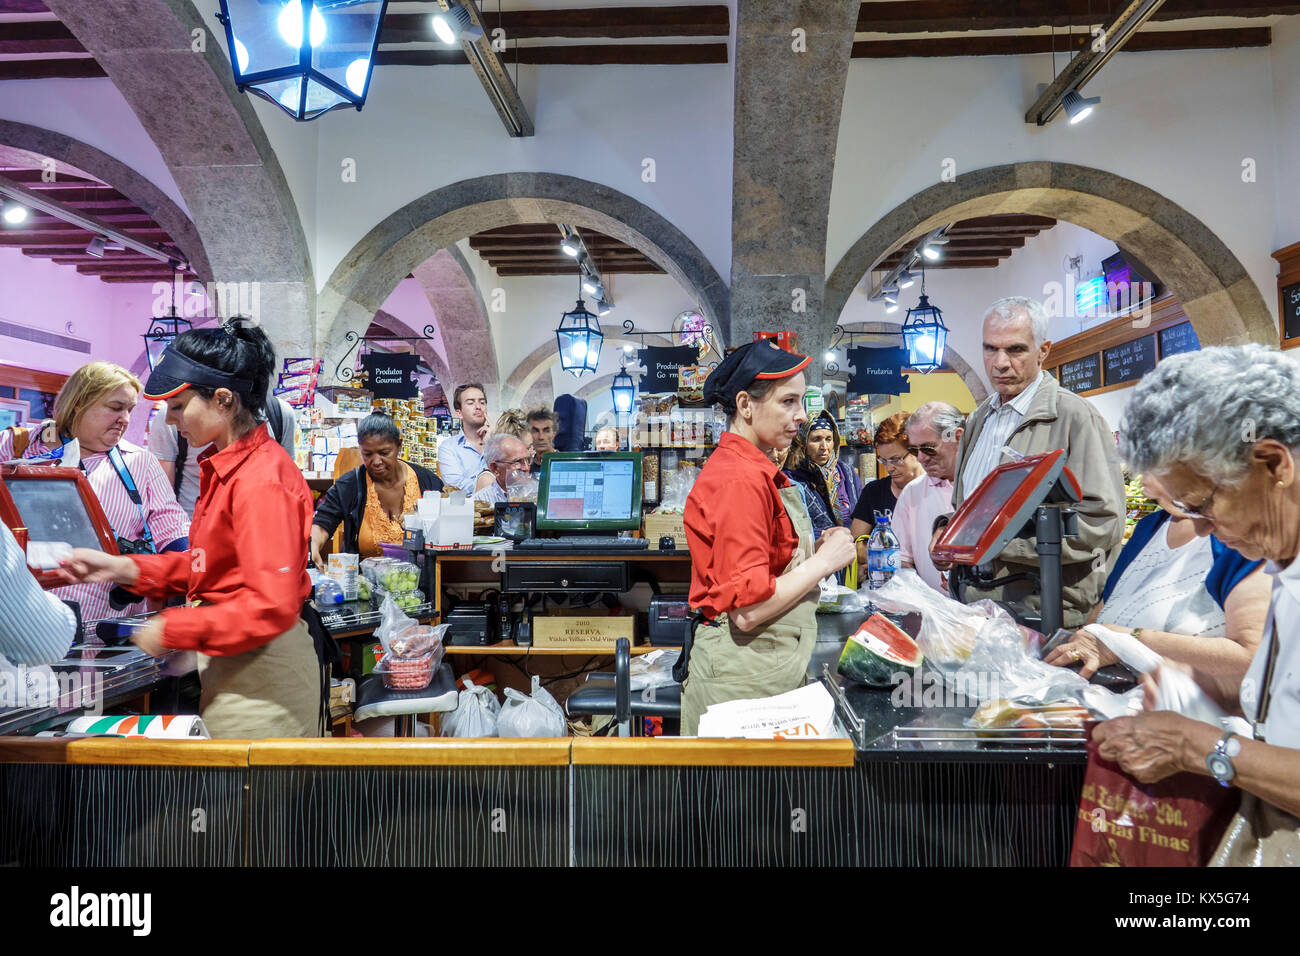 Lissabon Portugal, Rossio, historisches Zentrum, Mercado da Figueira, Markt, Lebensmittel, Shopping Shopper Shopper shoppen Geschäfte Markt Märkte kaufen verkaufen, Einzelhandel Stockfoto